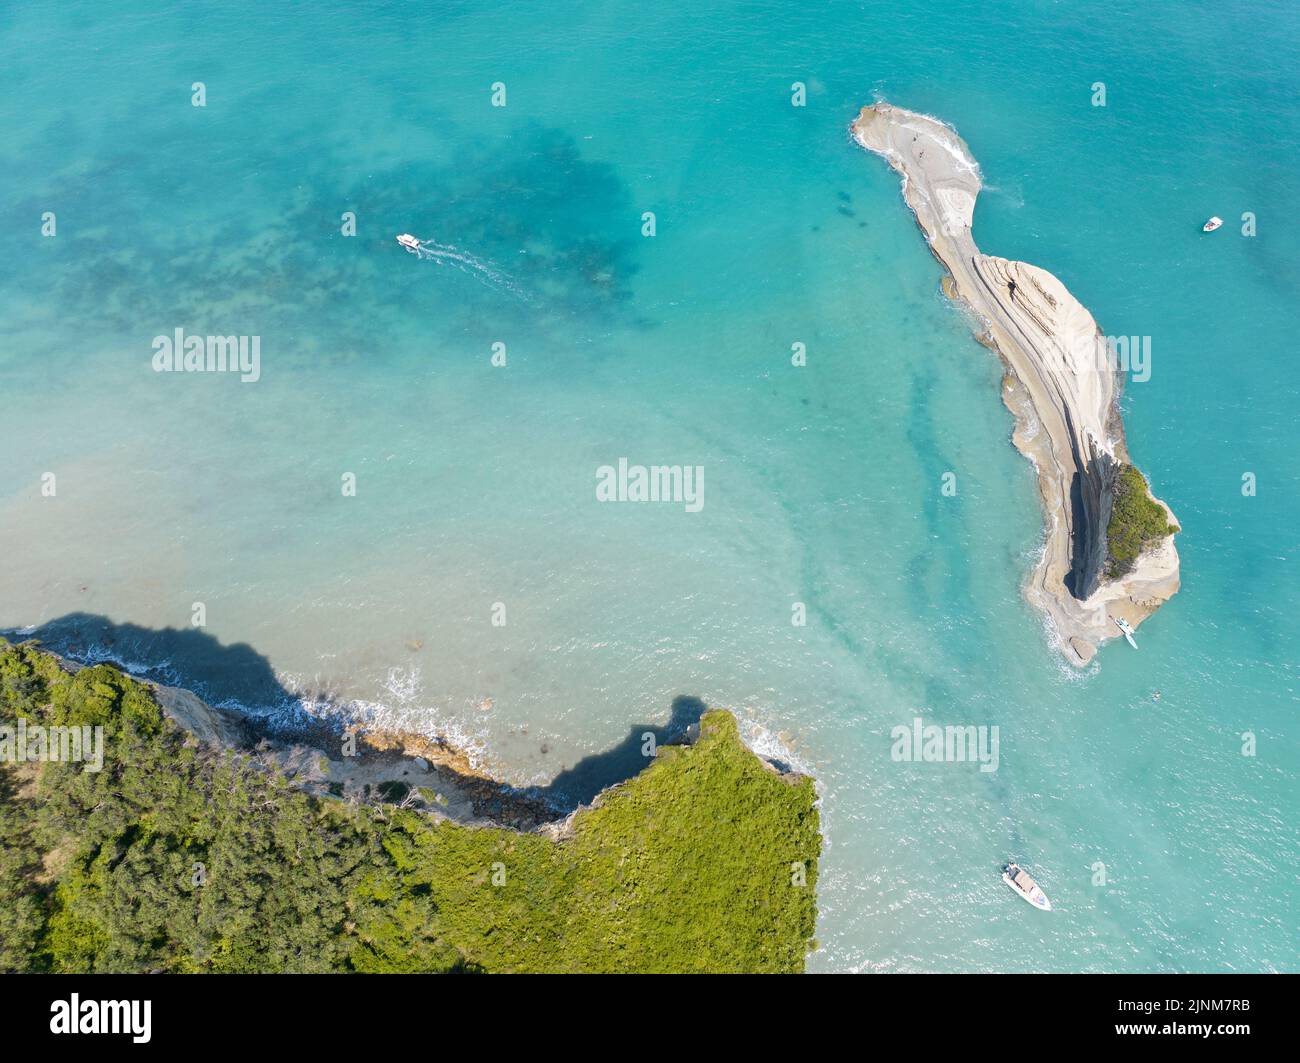 Veduta aerea della scogliera che si affaccia sul mare vicino alla spiaggia di Apotripiti e della roccia della Sirenetta, promontorio sul mare cristallino. Isola di Corfù, Sidari Grecia Foto Stock